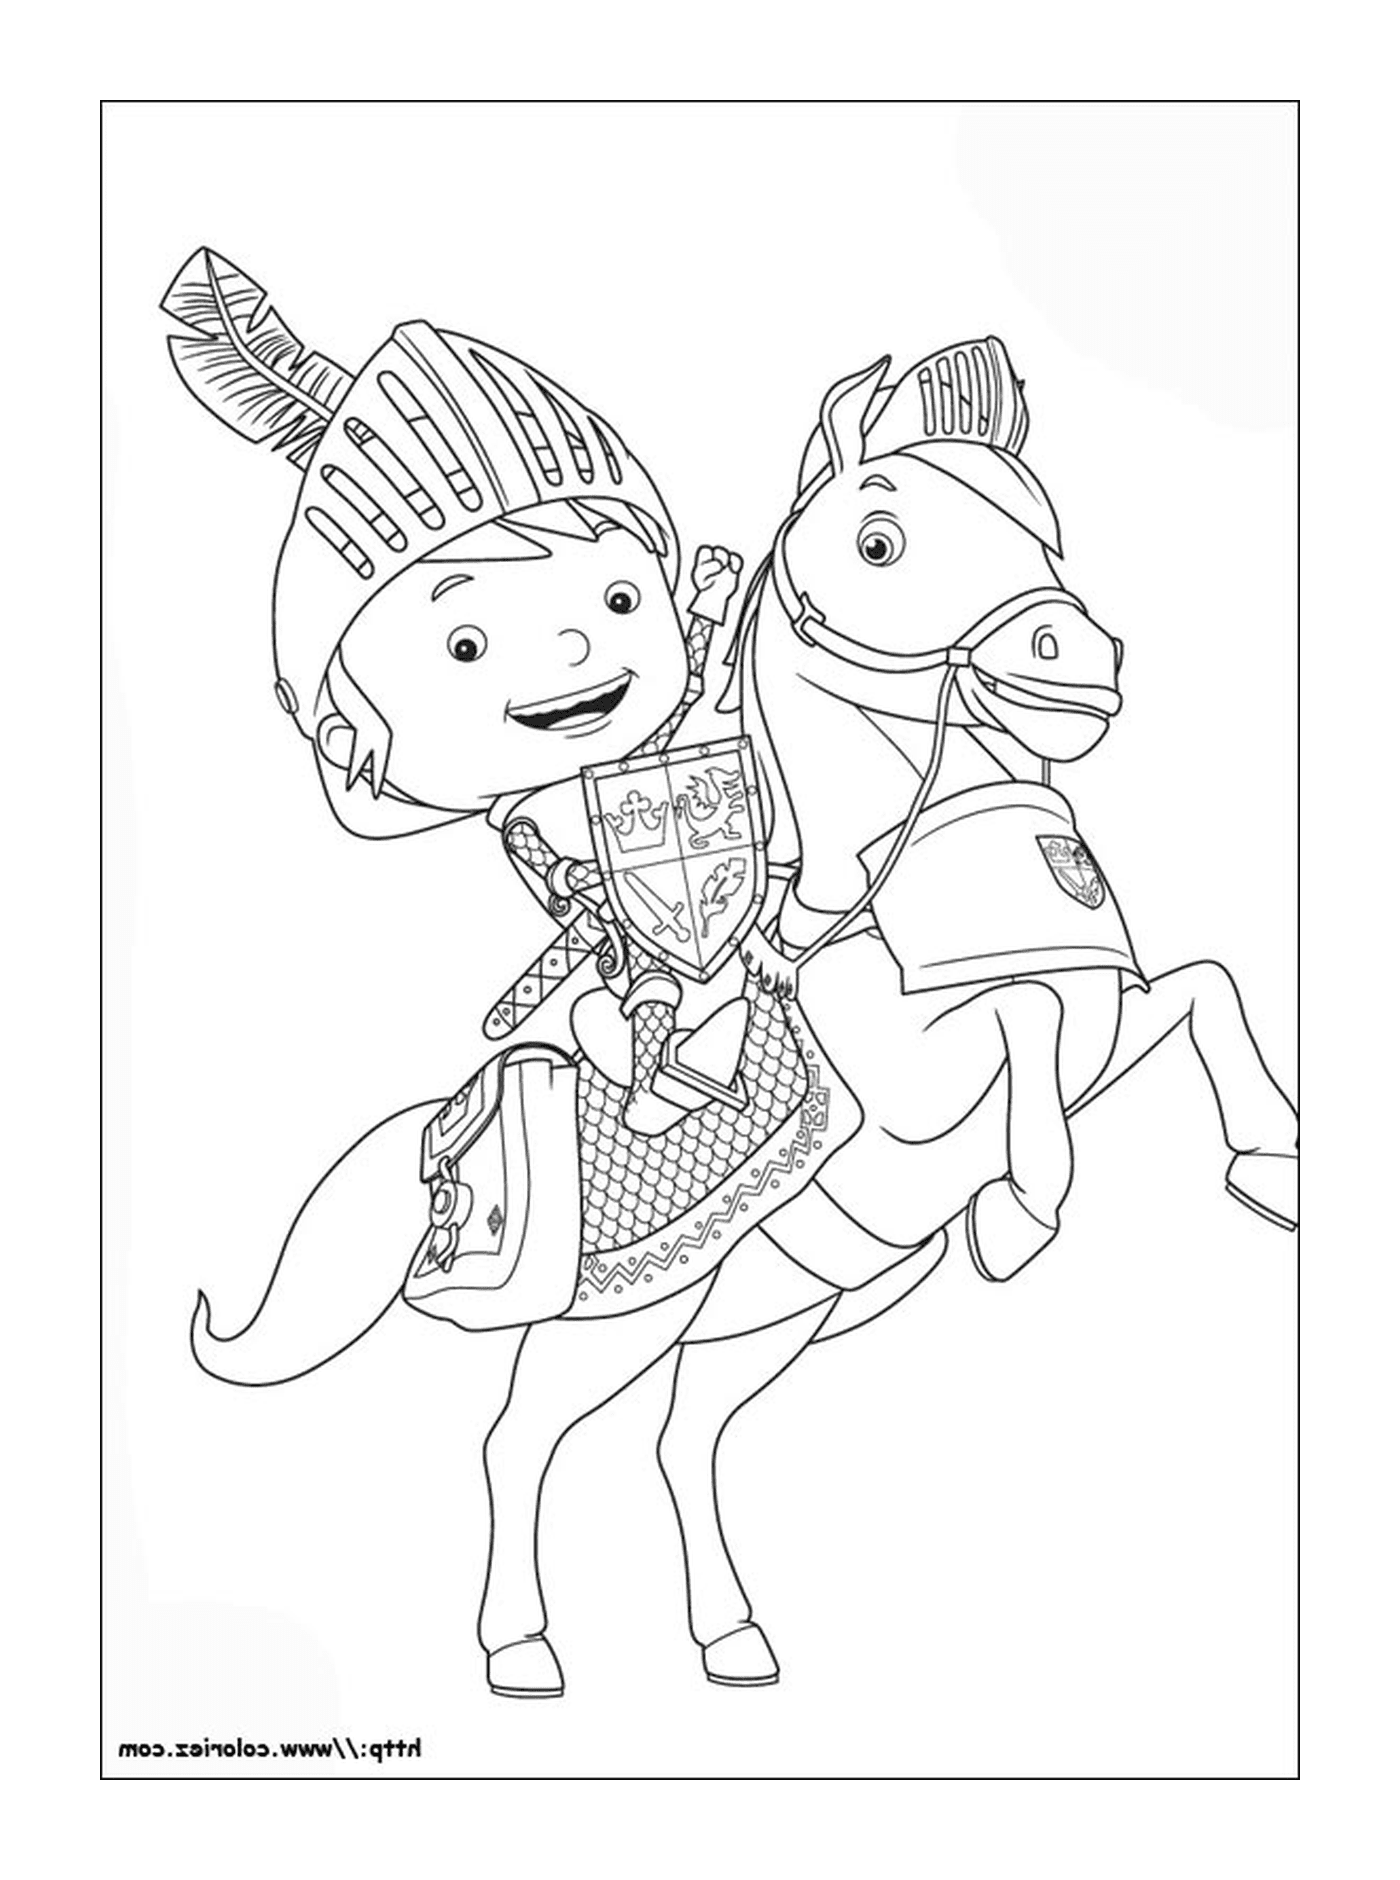  Un ragazzo a cavallo 